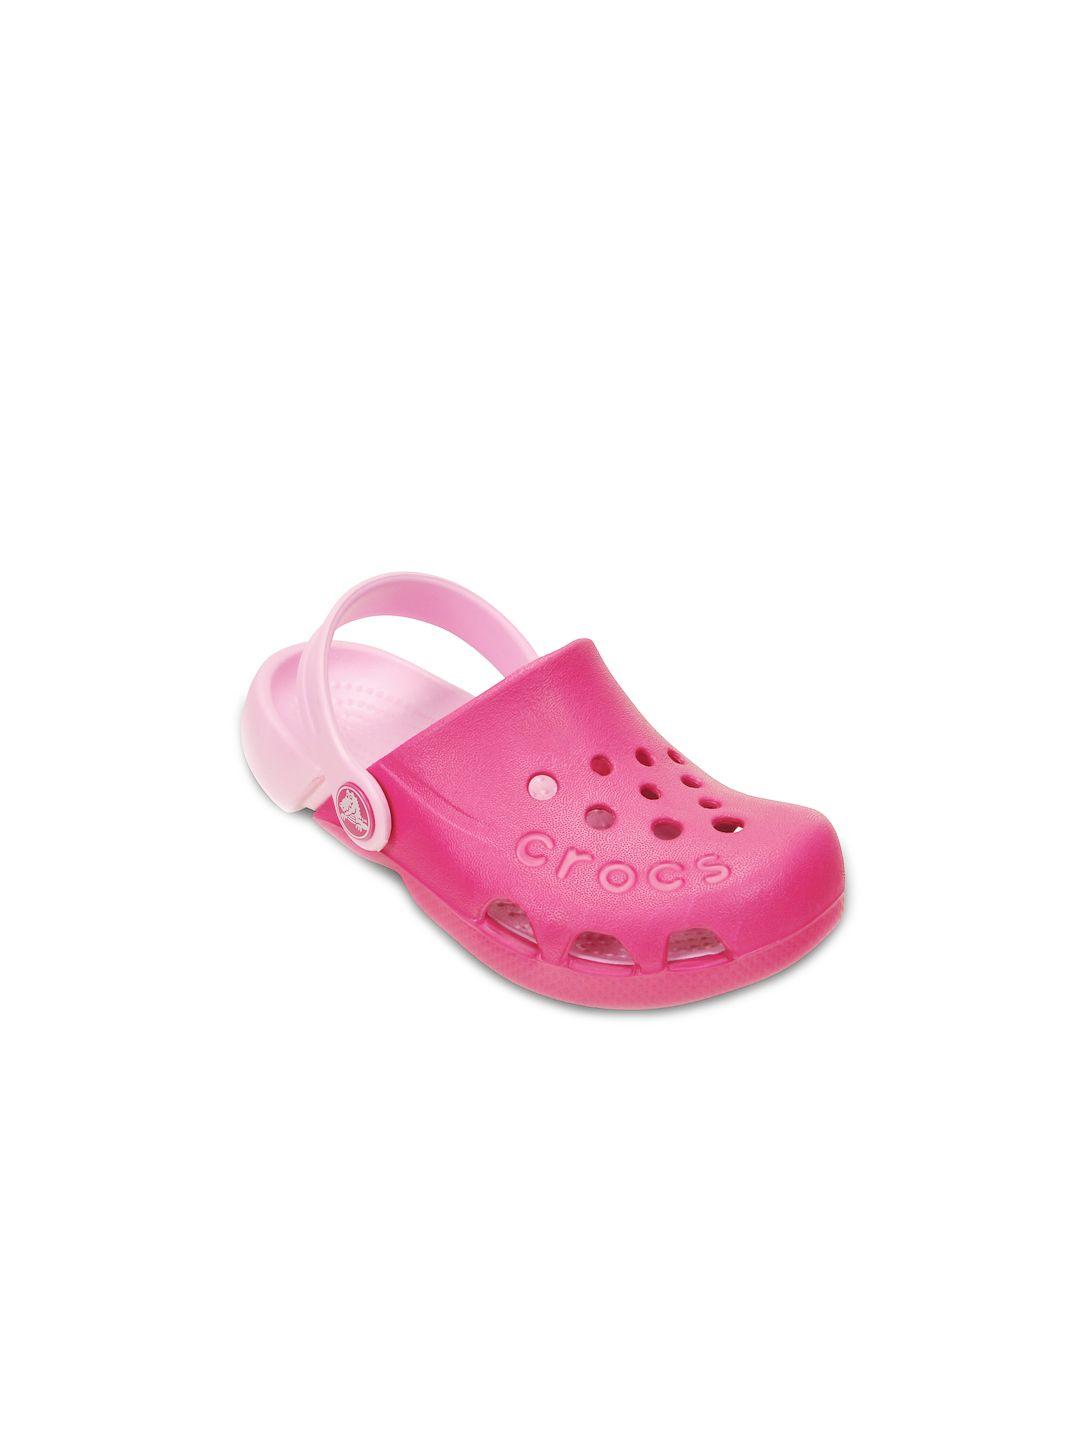 crocs-electro--girls-pink-clogs